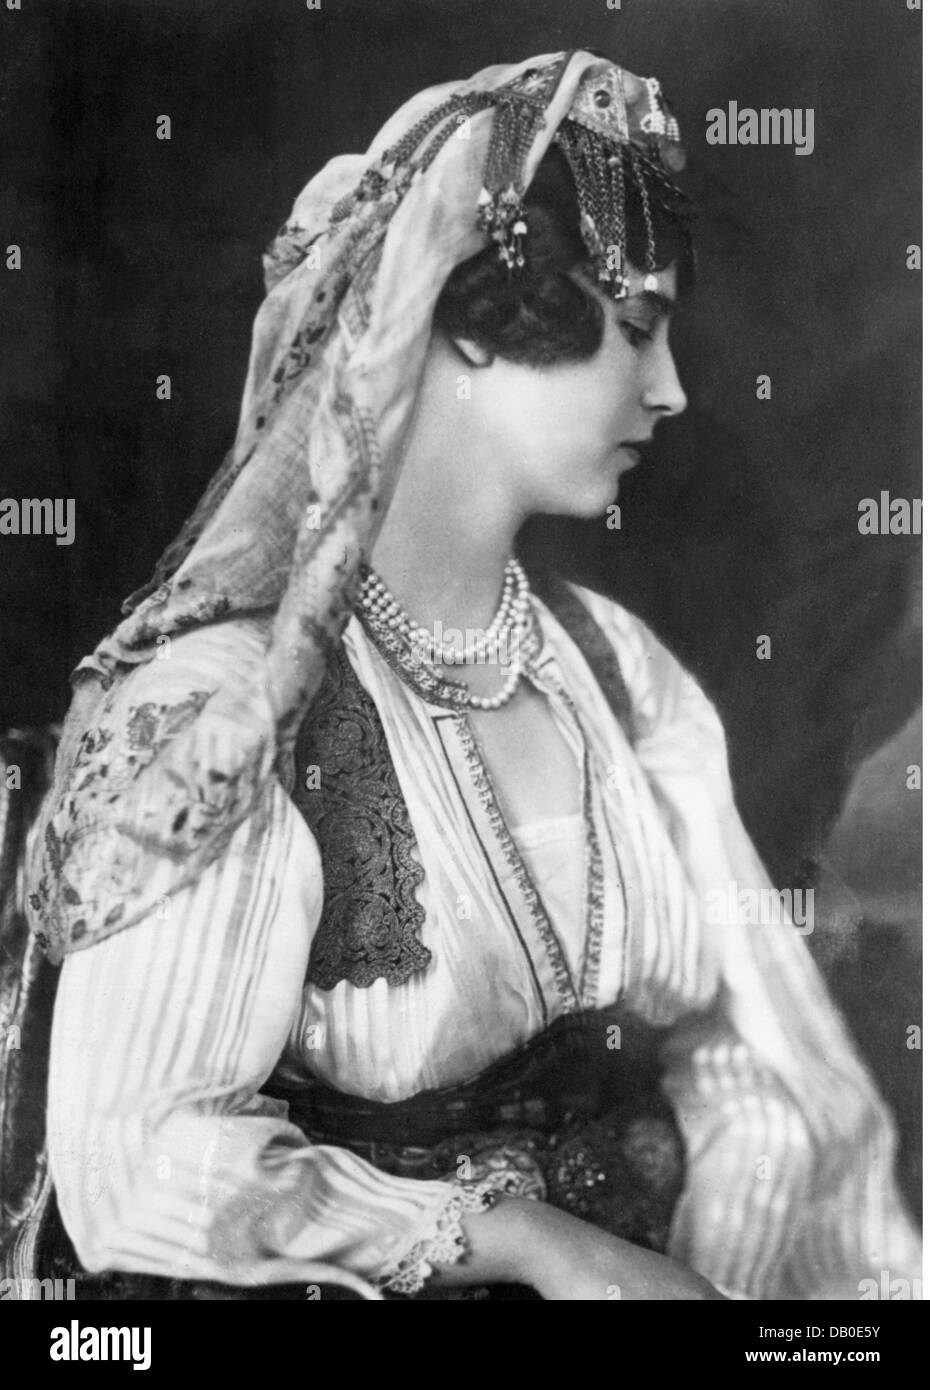 Olga, 11.6.1903 - 16.10.1997, Princess of Yugoslavia 22.10.1923 - 16.10.1997, half length, in Montegrin costume, 1930s, Stock Photo